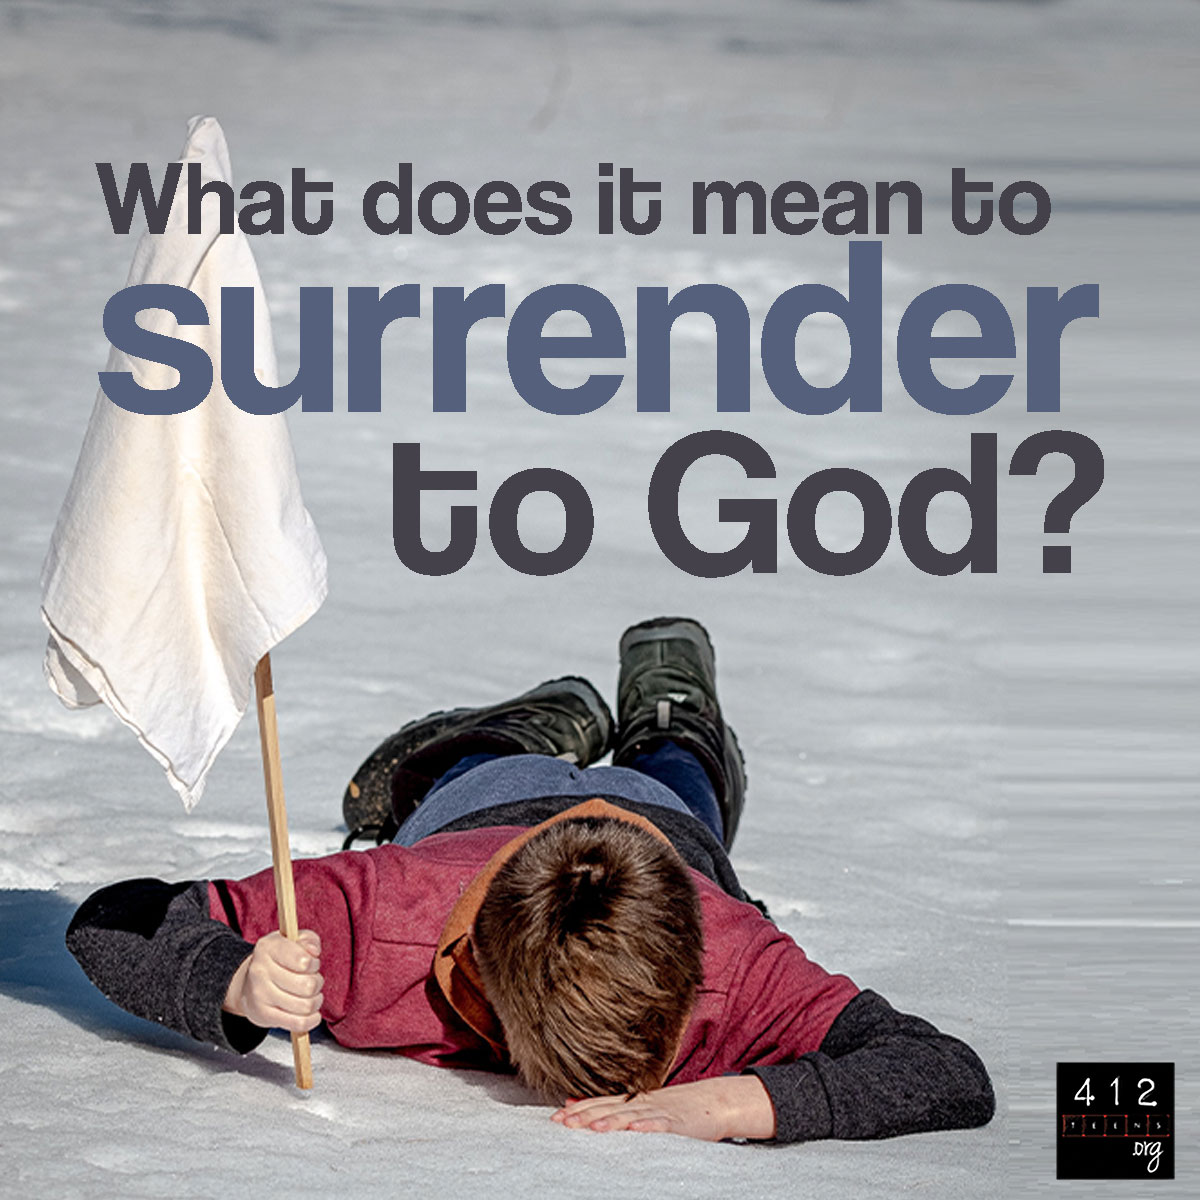 surrender god does mean 412teens